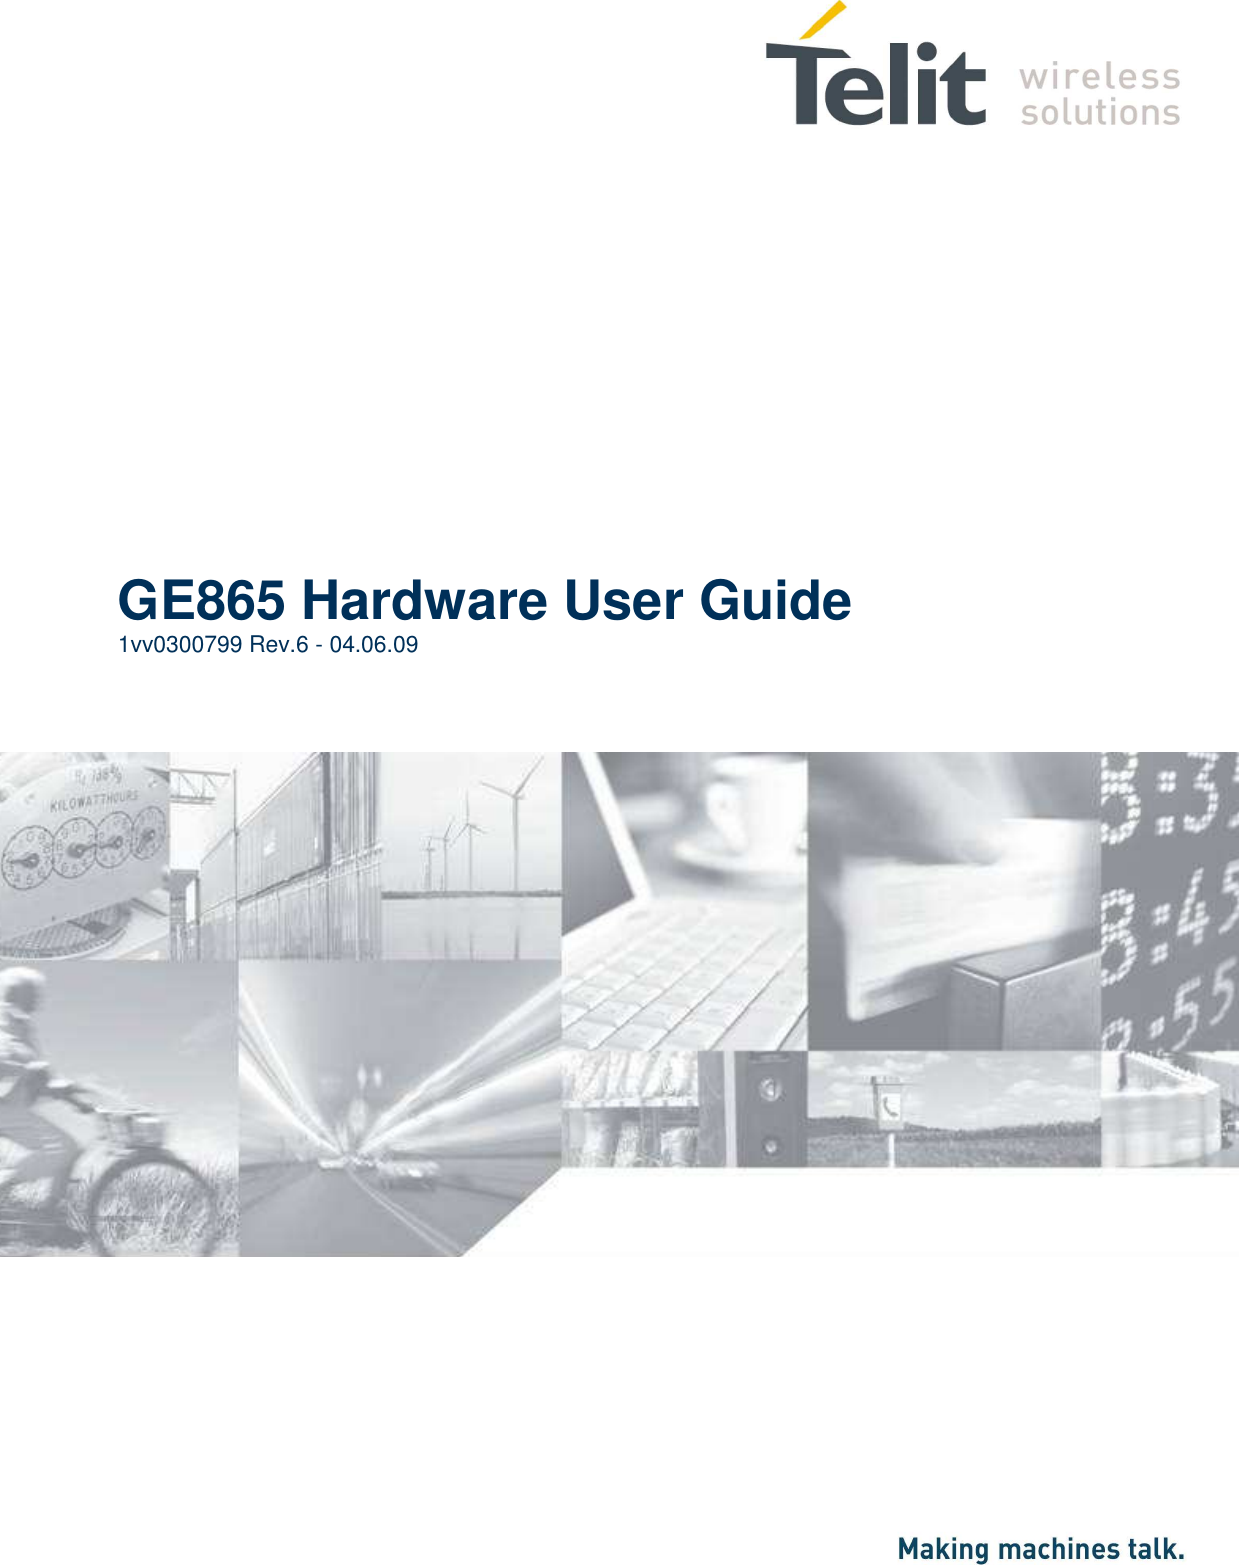                     GE865 Hardware User Guide 1vv0300799 Rev.6 - 04.06.09  